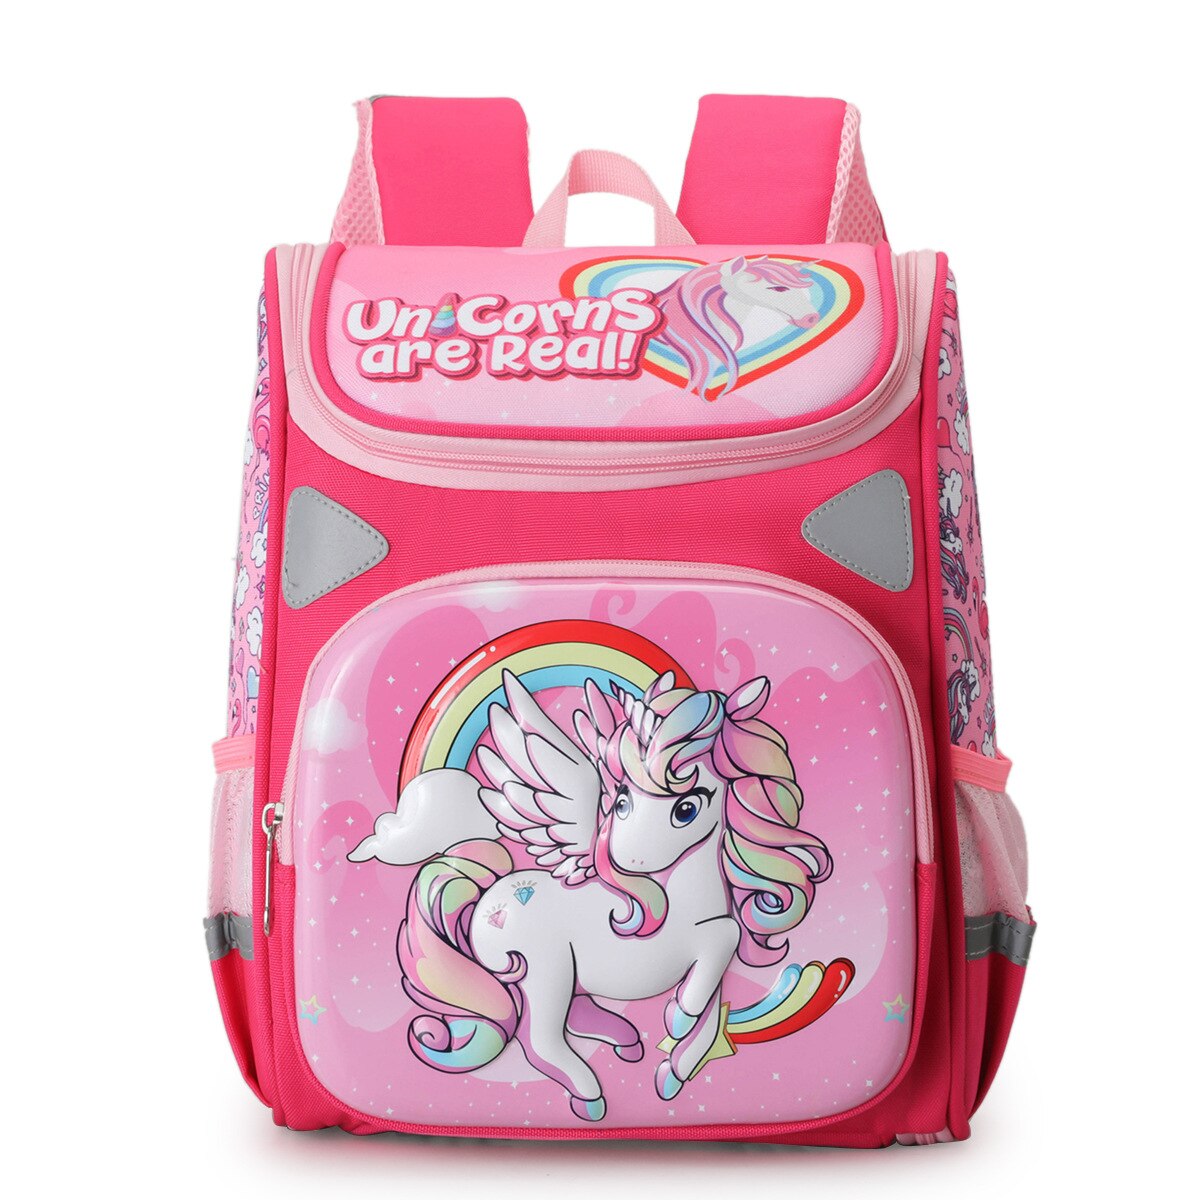 Cute-Cartoon-Deer-Girls-School-Bags-Princess-Purple-Nylon-Children-Backpacks-For-Primary-School-Students-Schoolbag-2